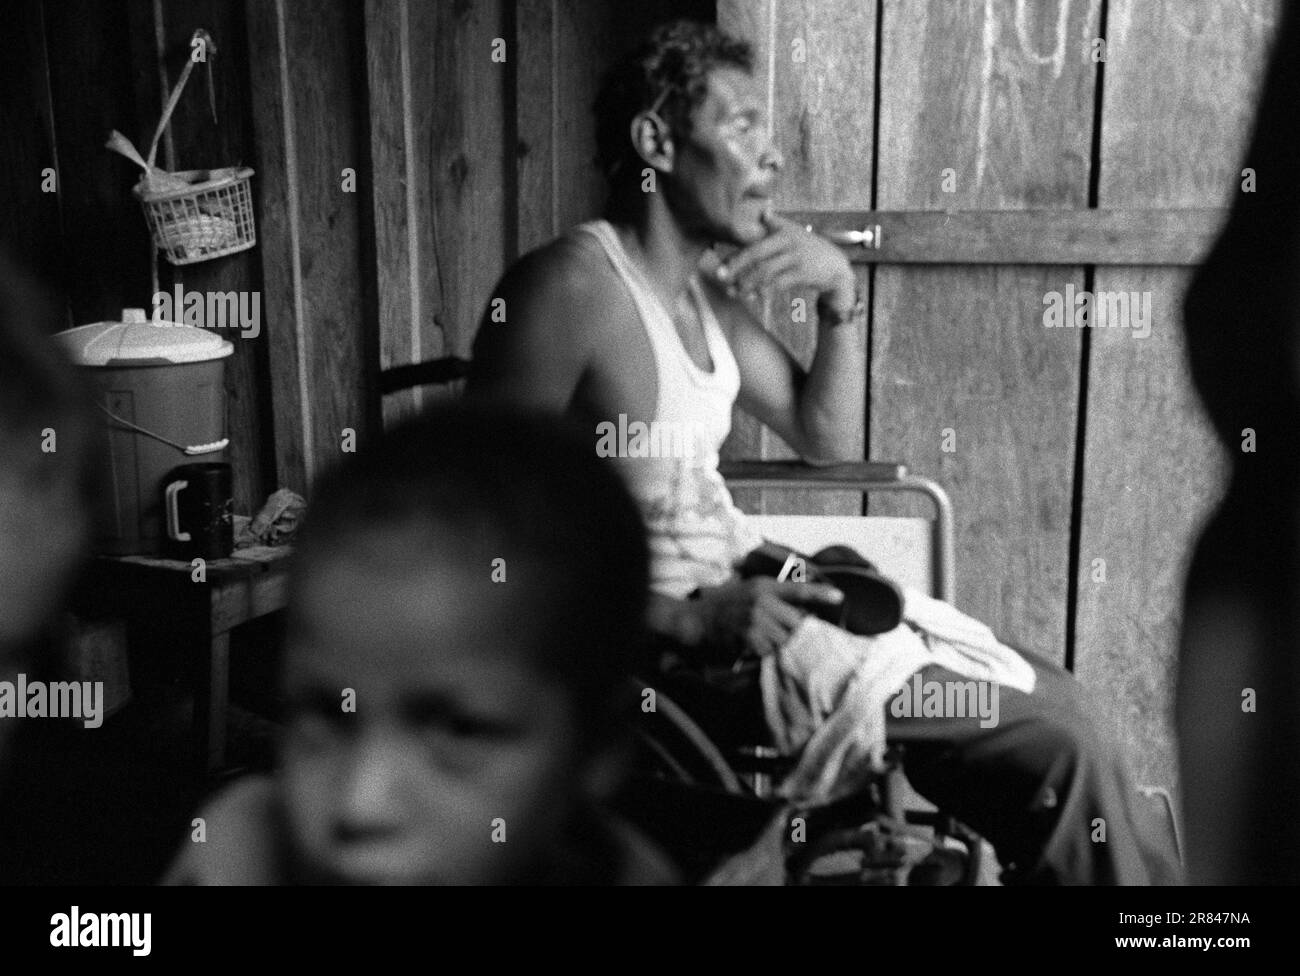 Ein ehemaliger Hummertaucher, der nach der Dekompressionskrankheit jetzt arbeitsunfähig geworden ist, sitzt in einem Rollstuhl in Honduras. Stockfoto